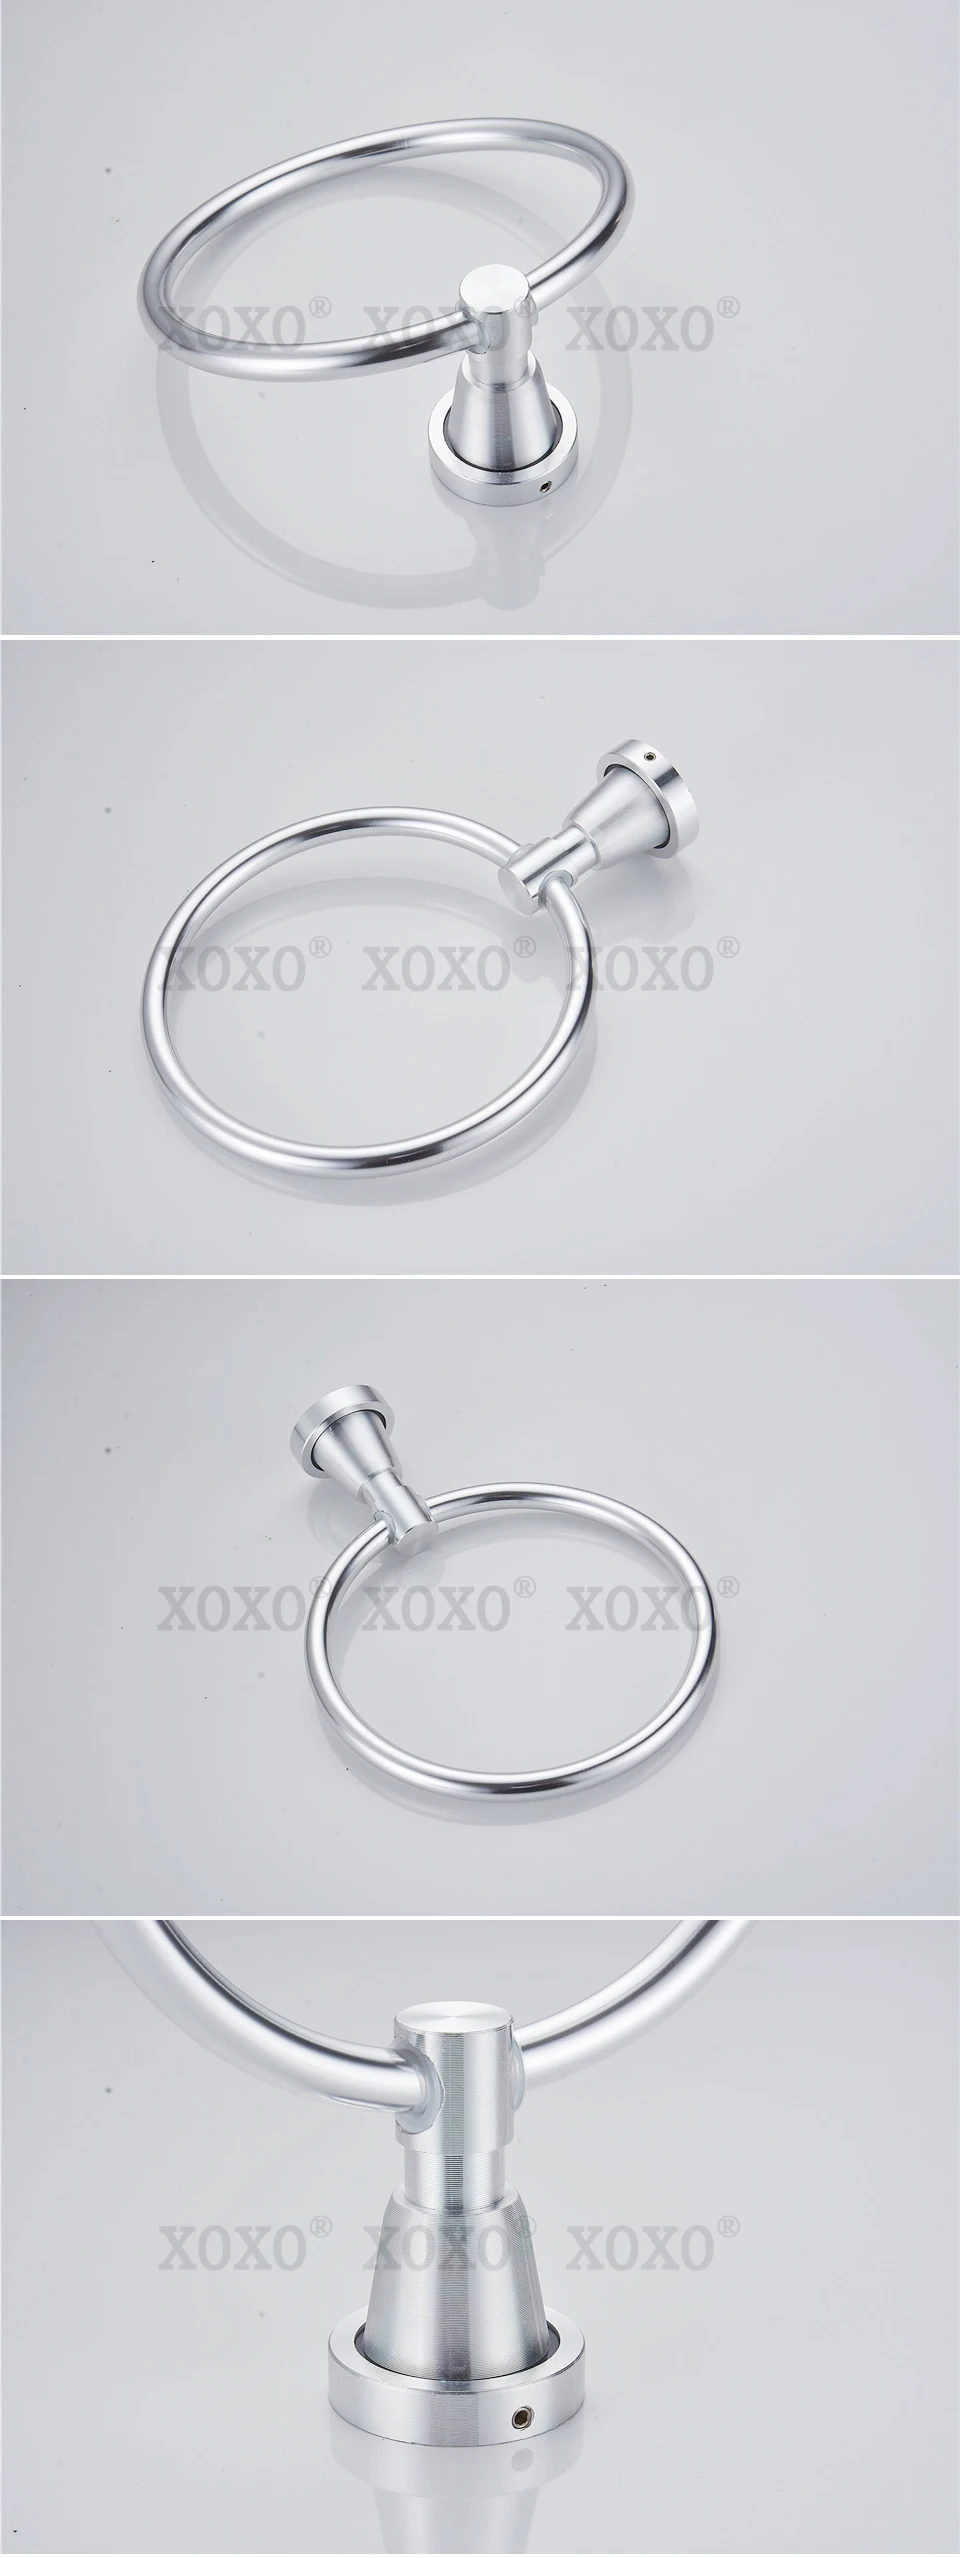 XOXO продукт soild практичный Настенный алюминиевый полотенцесушитель/держатель для полотенец 3080